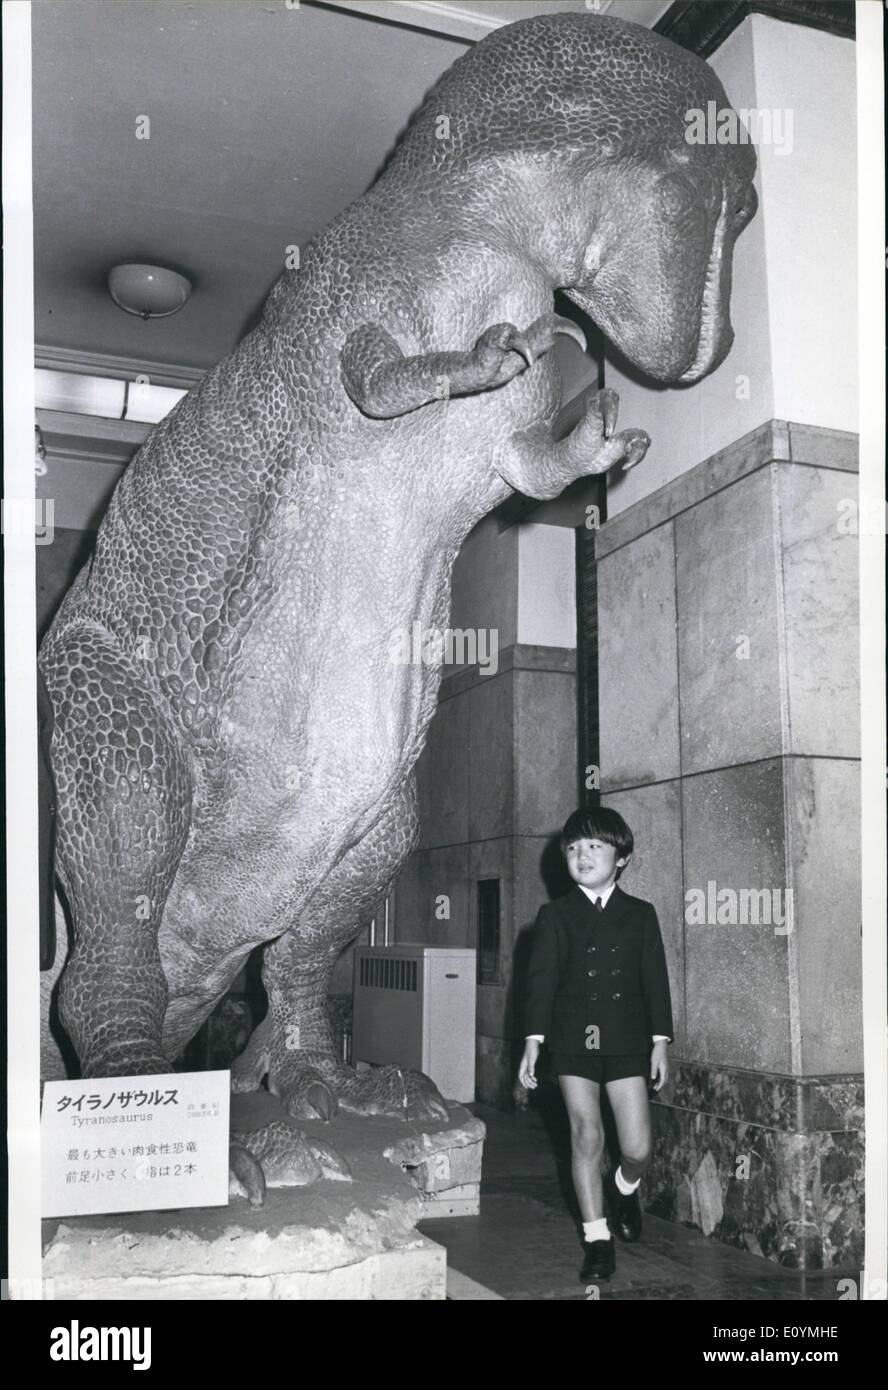 10. Oktober 1970 - Prinz nicht Angst von Monstern: kleine Prinz Aya, zweiter Sohn des Kronprinzen und der Prinzessin von Japan, hielt eine steife obere Lippe, wenn er kam Angesicht zu Angesicht mit prähistorischen Monstern in seinem ersten Besuch in das Science Museum in Tokio. Beim Eintritt in das Museum, die, das der Prinz nur ein wenig besorgt war, als er unter einem hoch aufragenden Tyranousauras, die bereit ist überliefert, sich auf ihn stürzen erschien, ließ sich dann ein Protoceratops Andrewsi untersuchen, die einst in der Mongolei lebten. Stockfoto